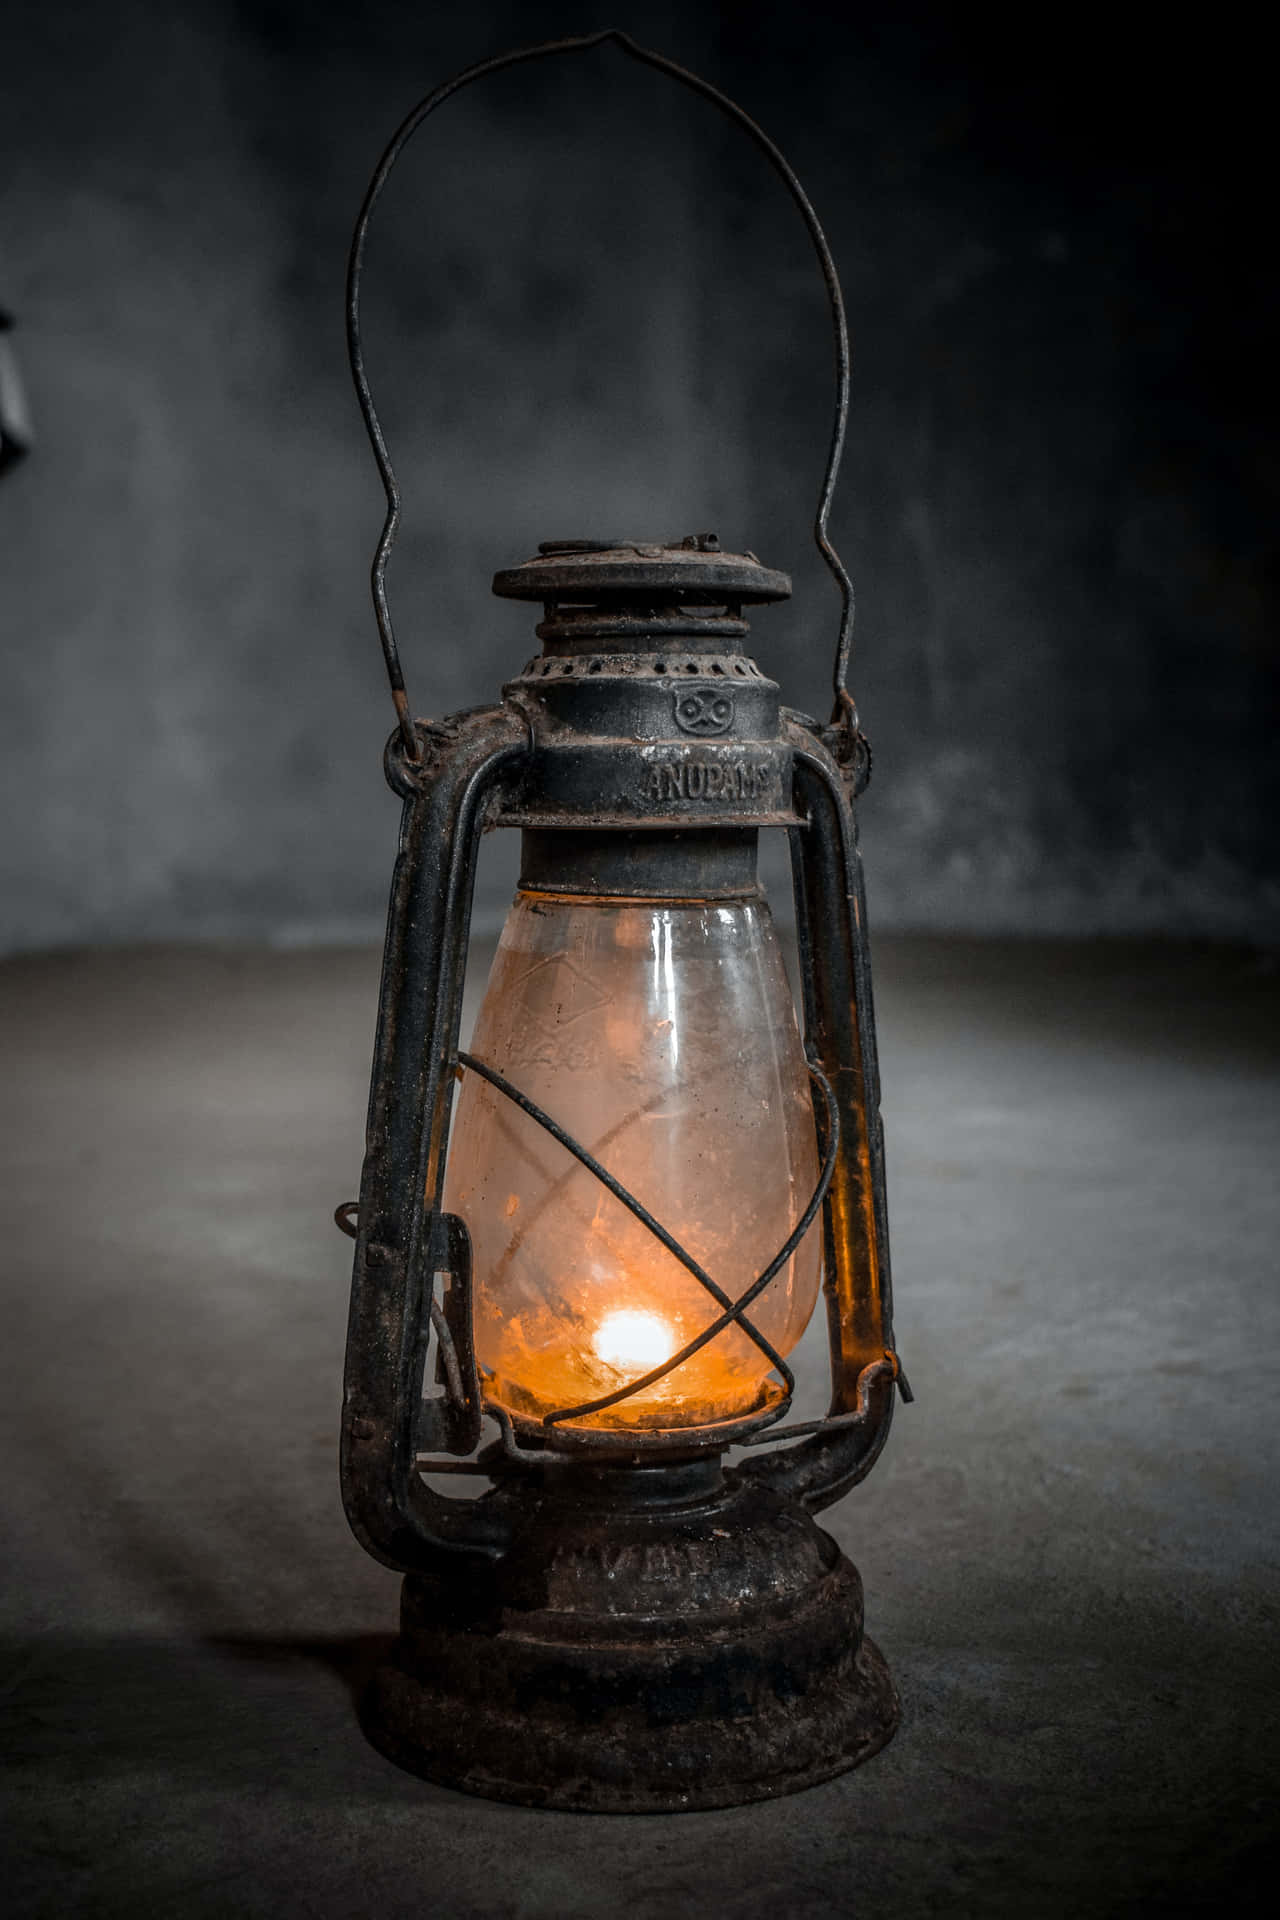 An Old Lantern Is Lit In A Dark Room Wallpaper